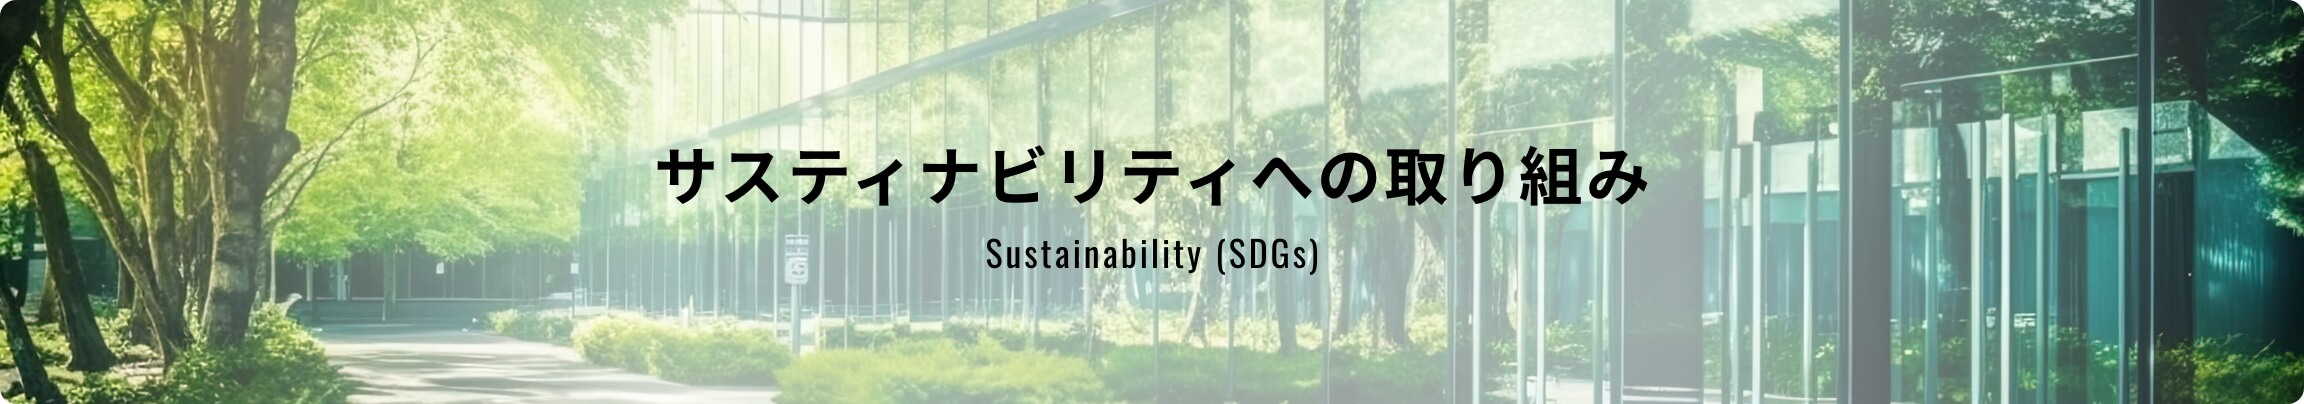 サスティナビリティへの取り組み Sustainability (SDGs)